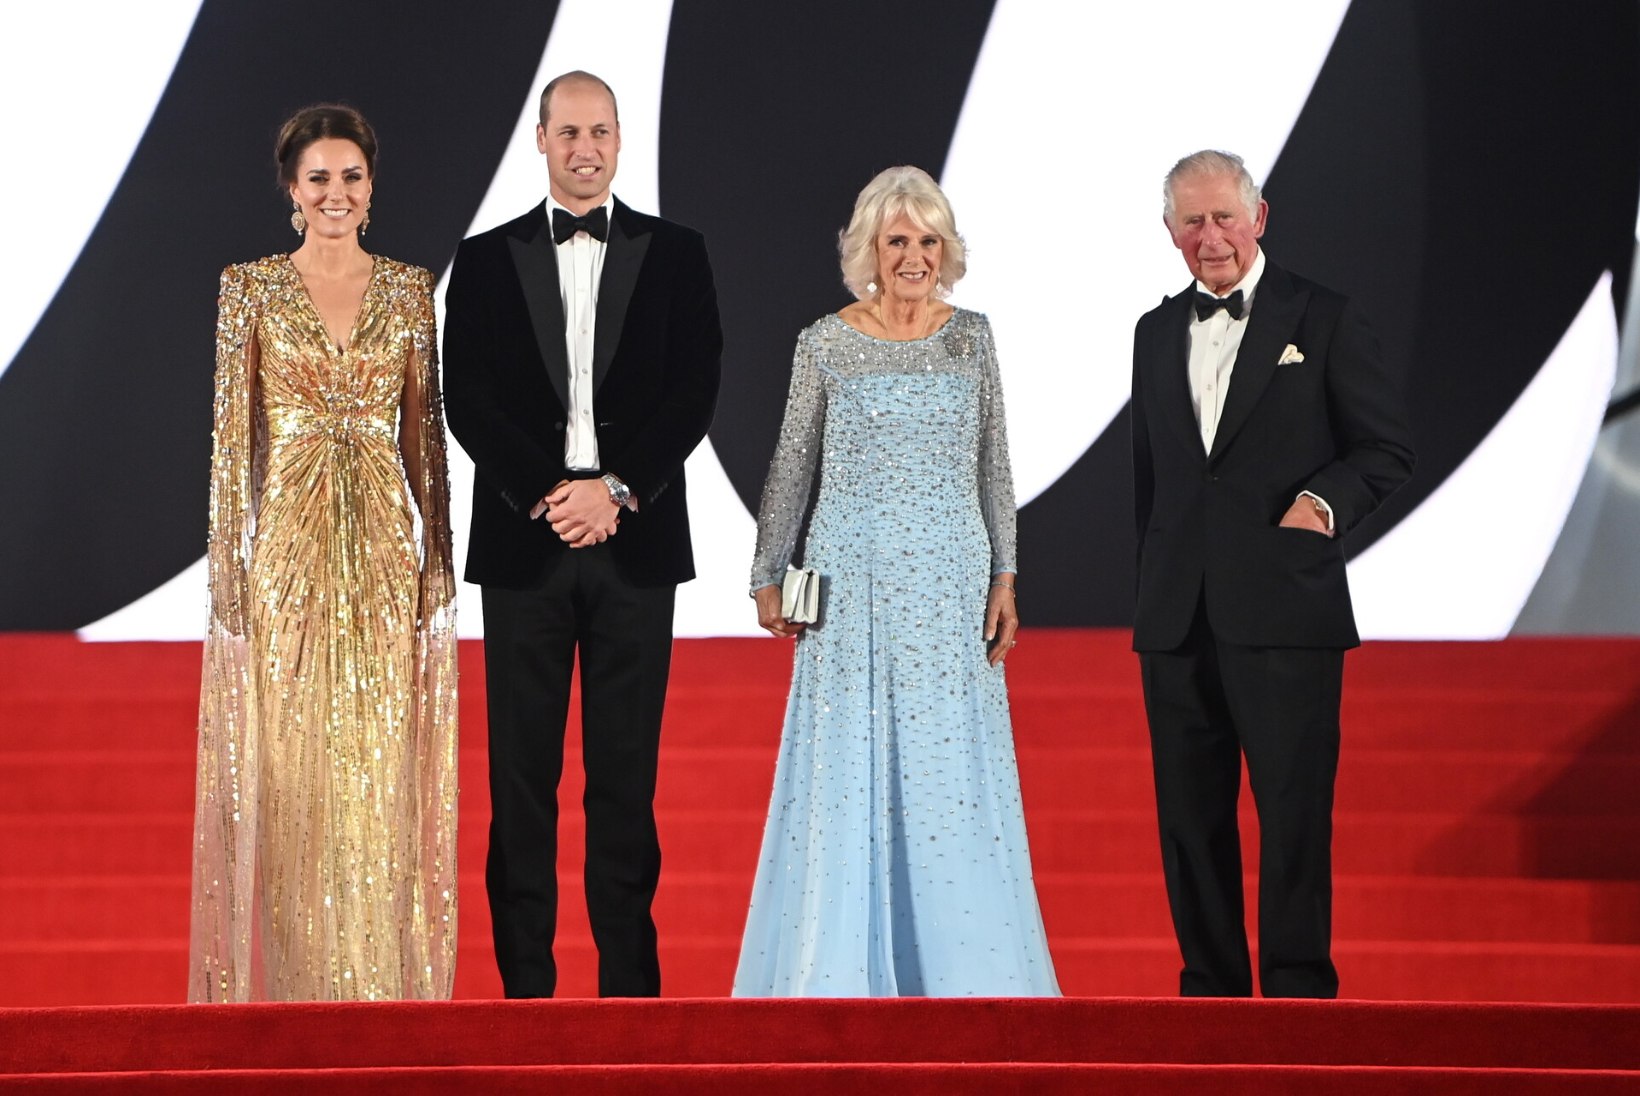 FOTOD | ENAM KUNINGLIKUM EI SAAKS OLLA! Hertsoginna Catherine saabus Bondi-filmi esilinastusele kuldses kleidis